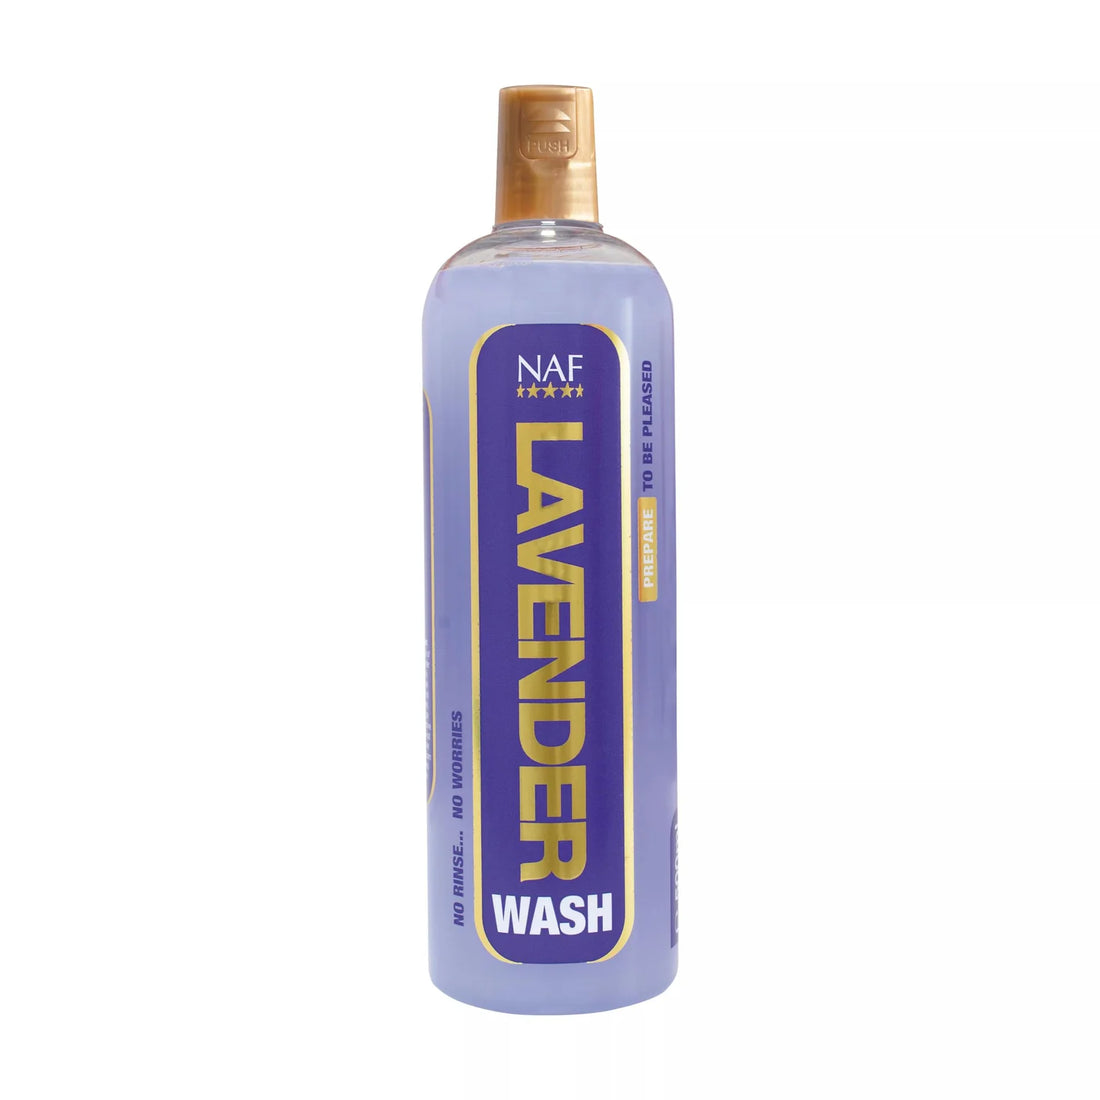 NAF - Shampoo, Hest, Lavender Wash, 500ml